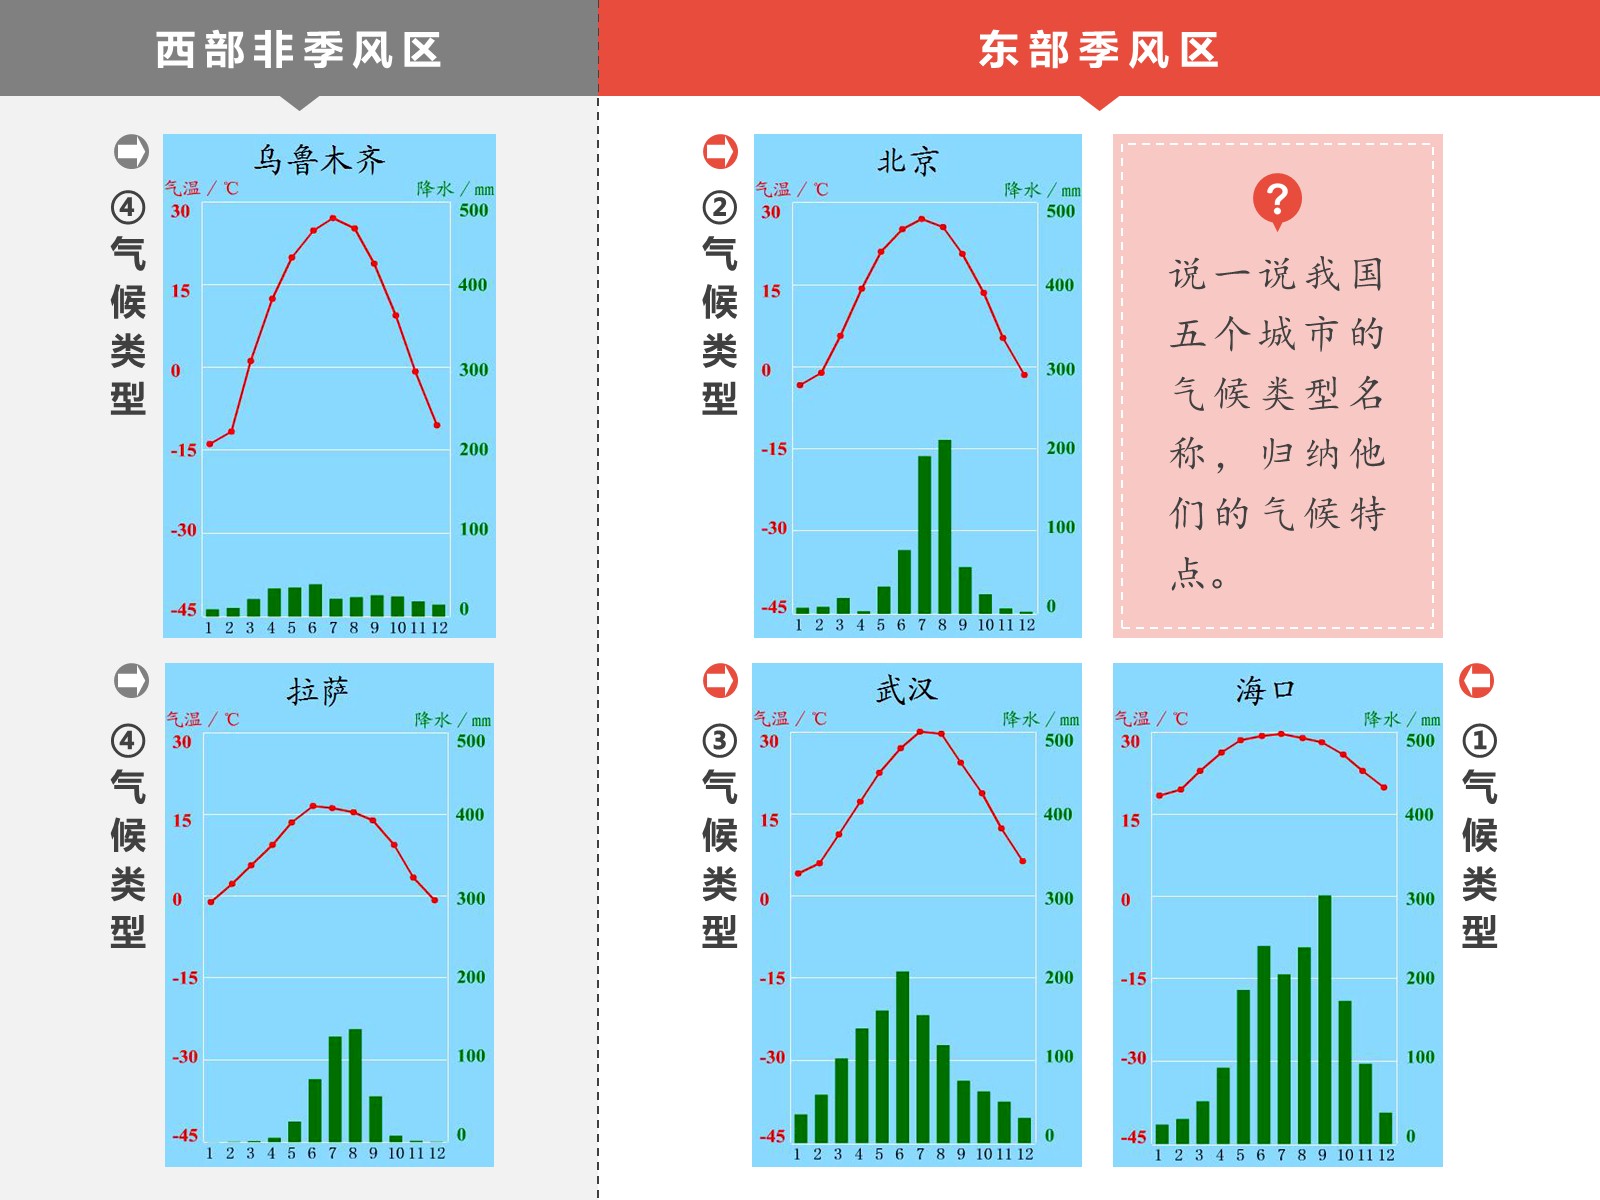 中国气候类型图-简介 - 中国地理地图 - 地理教师网